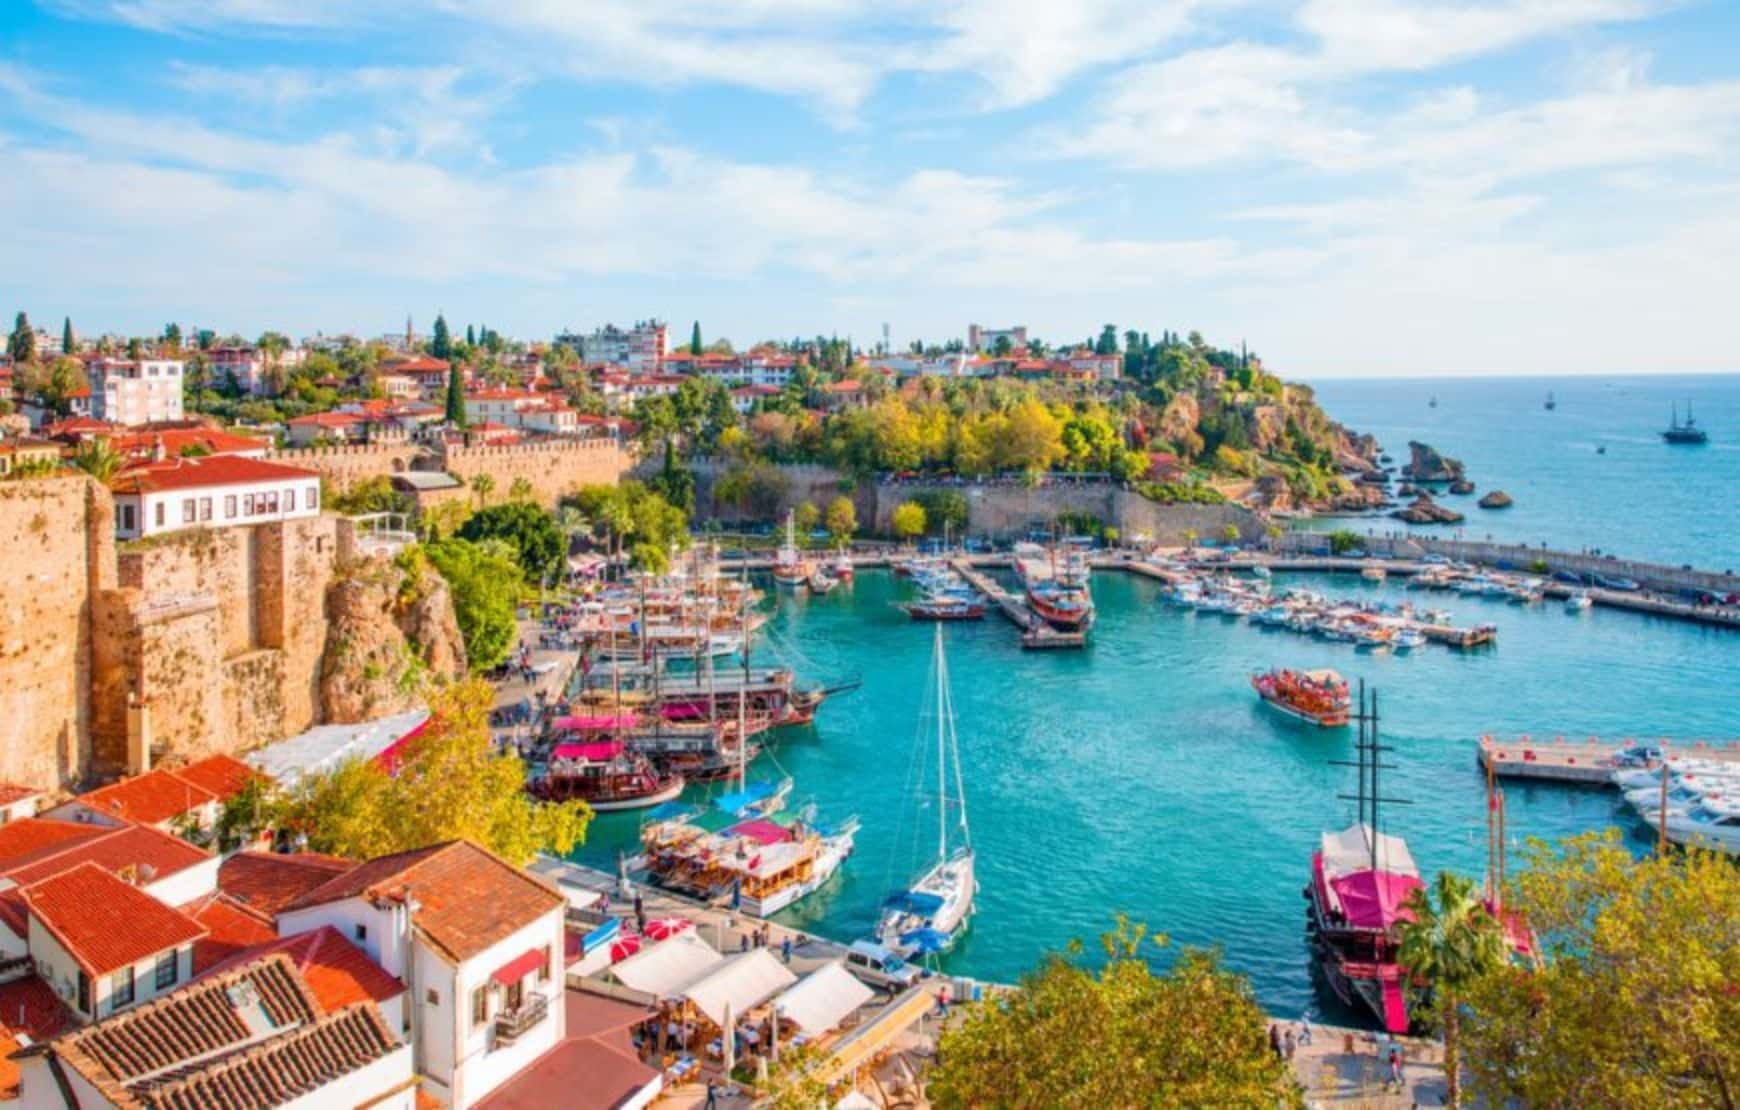 Kaleici Port - Antalya